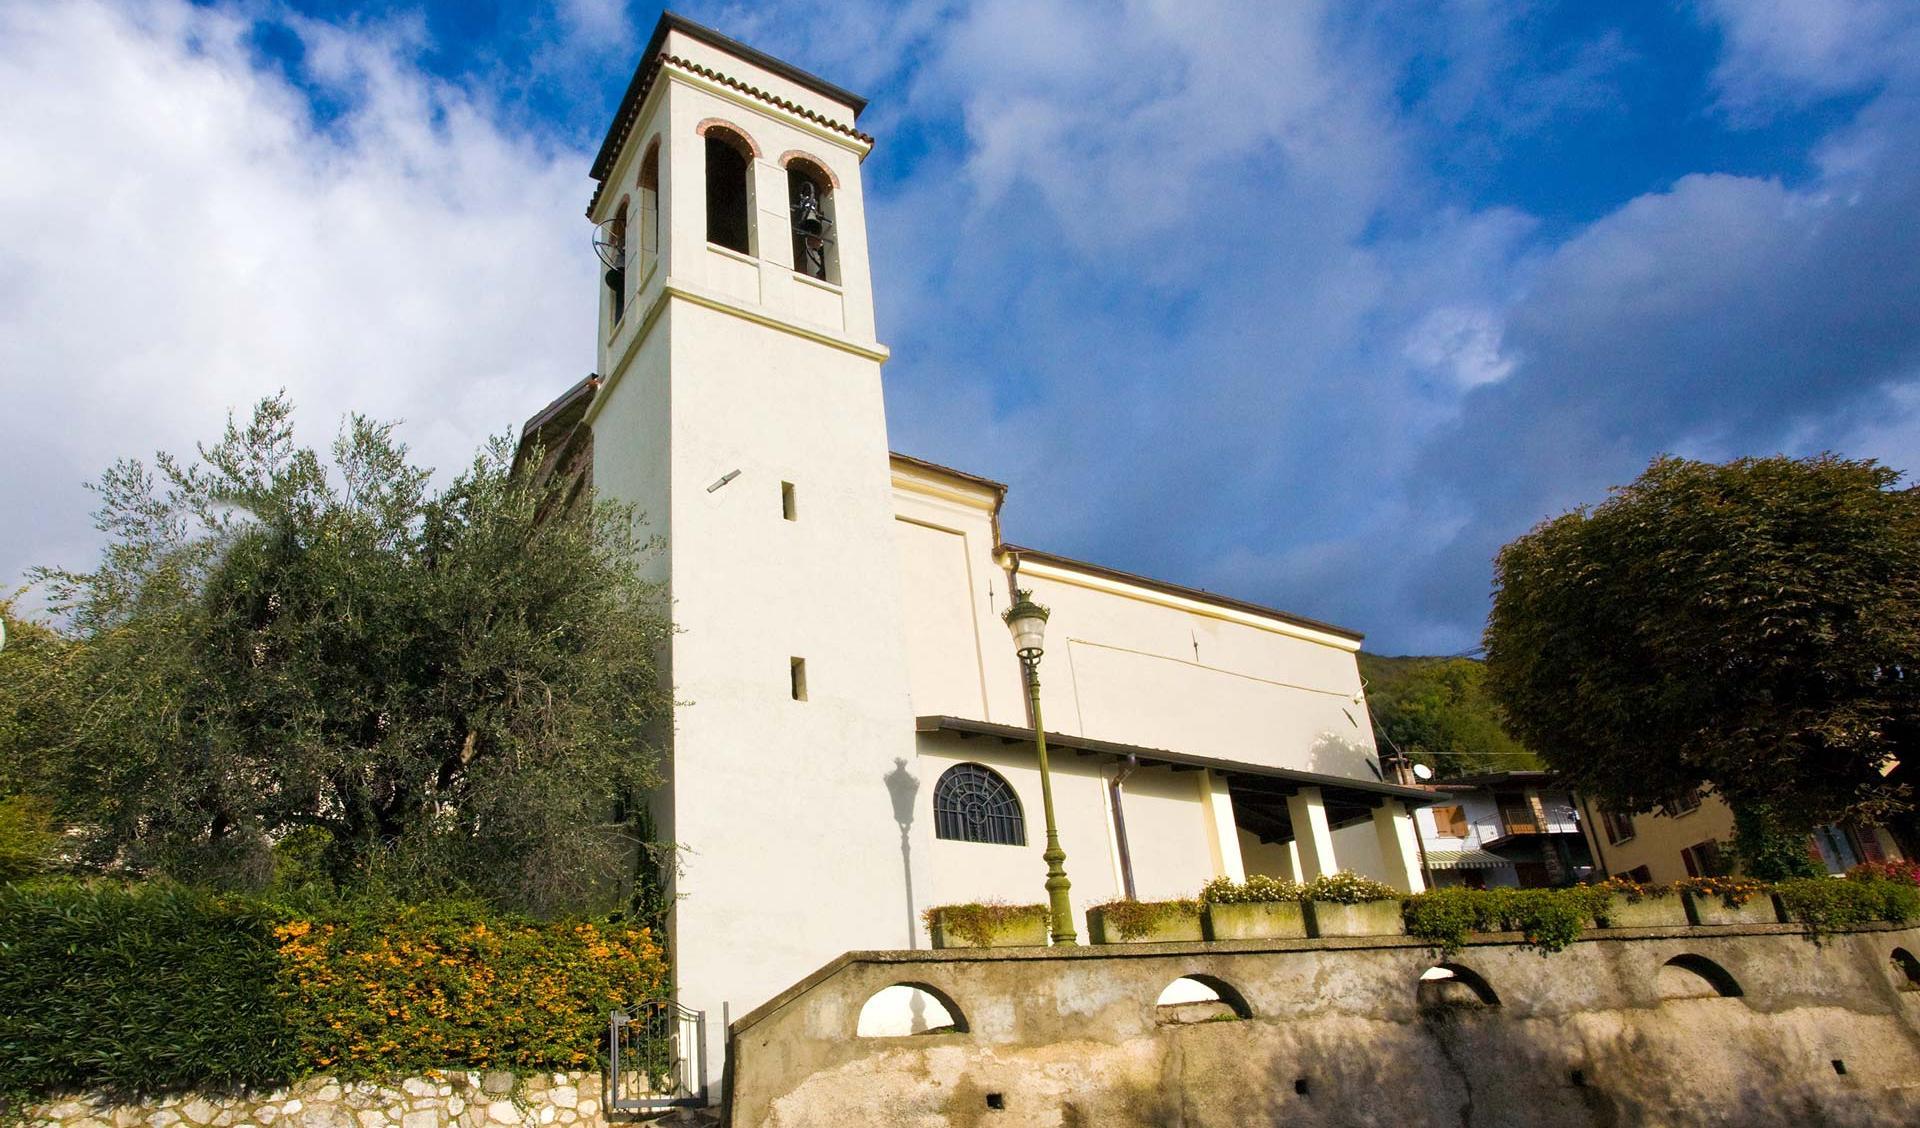 Restauro e consolidamento sismico chiese sul territorio